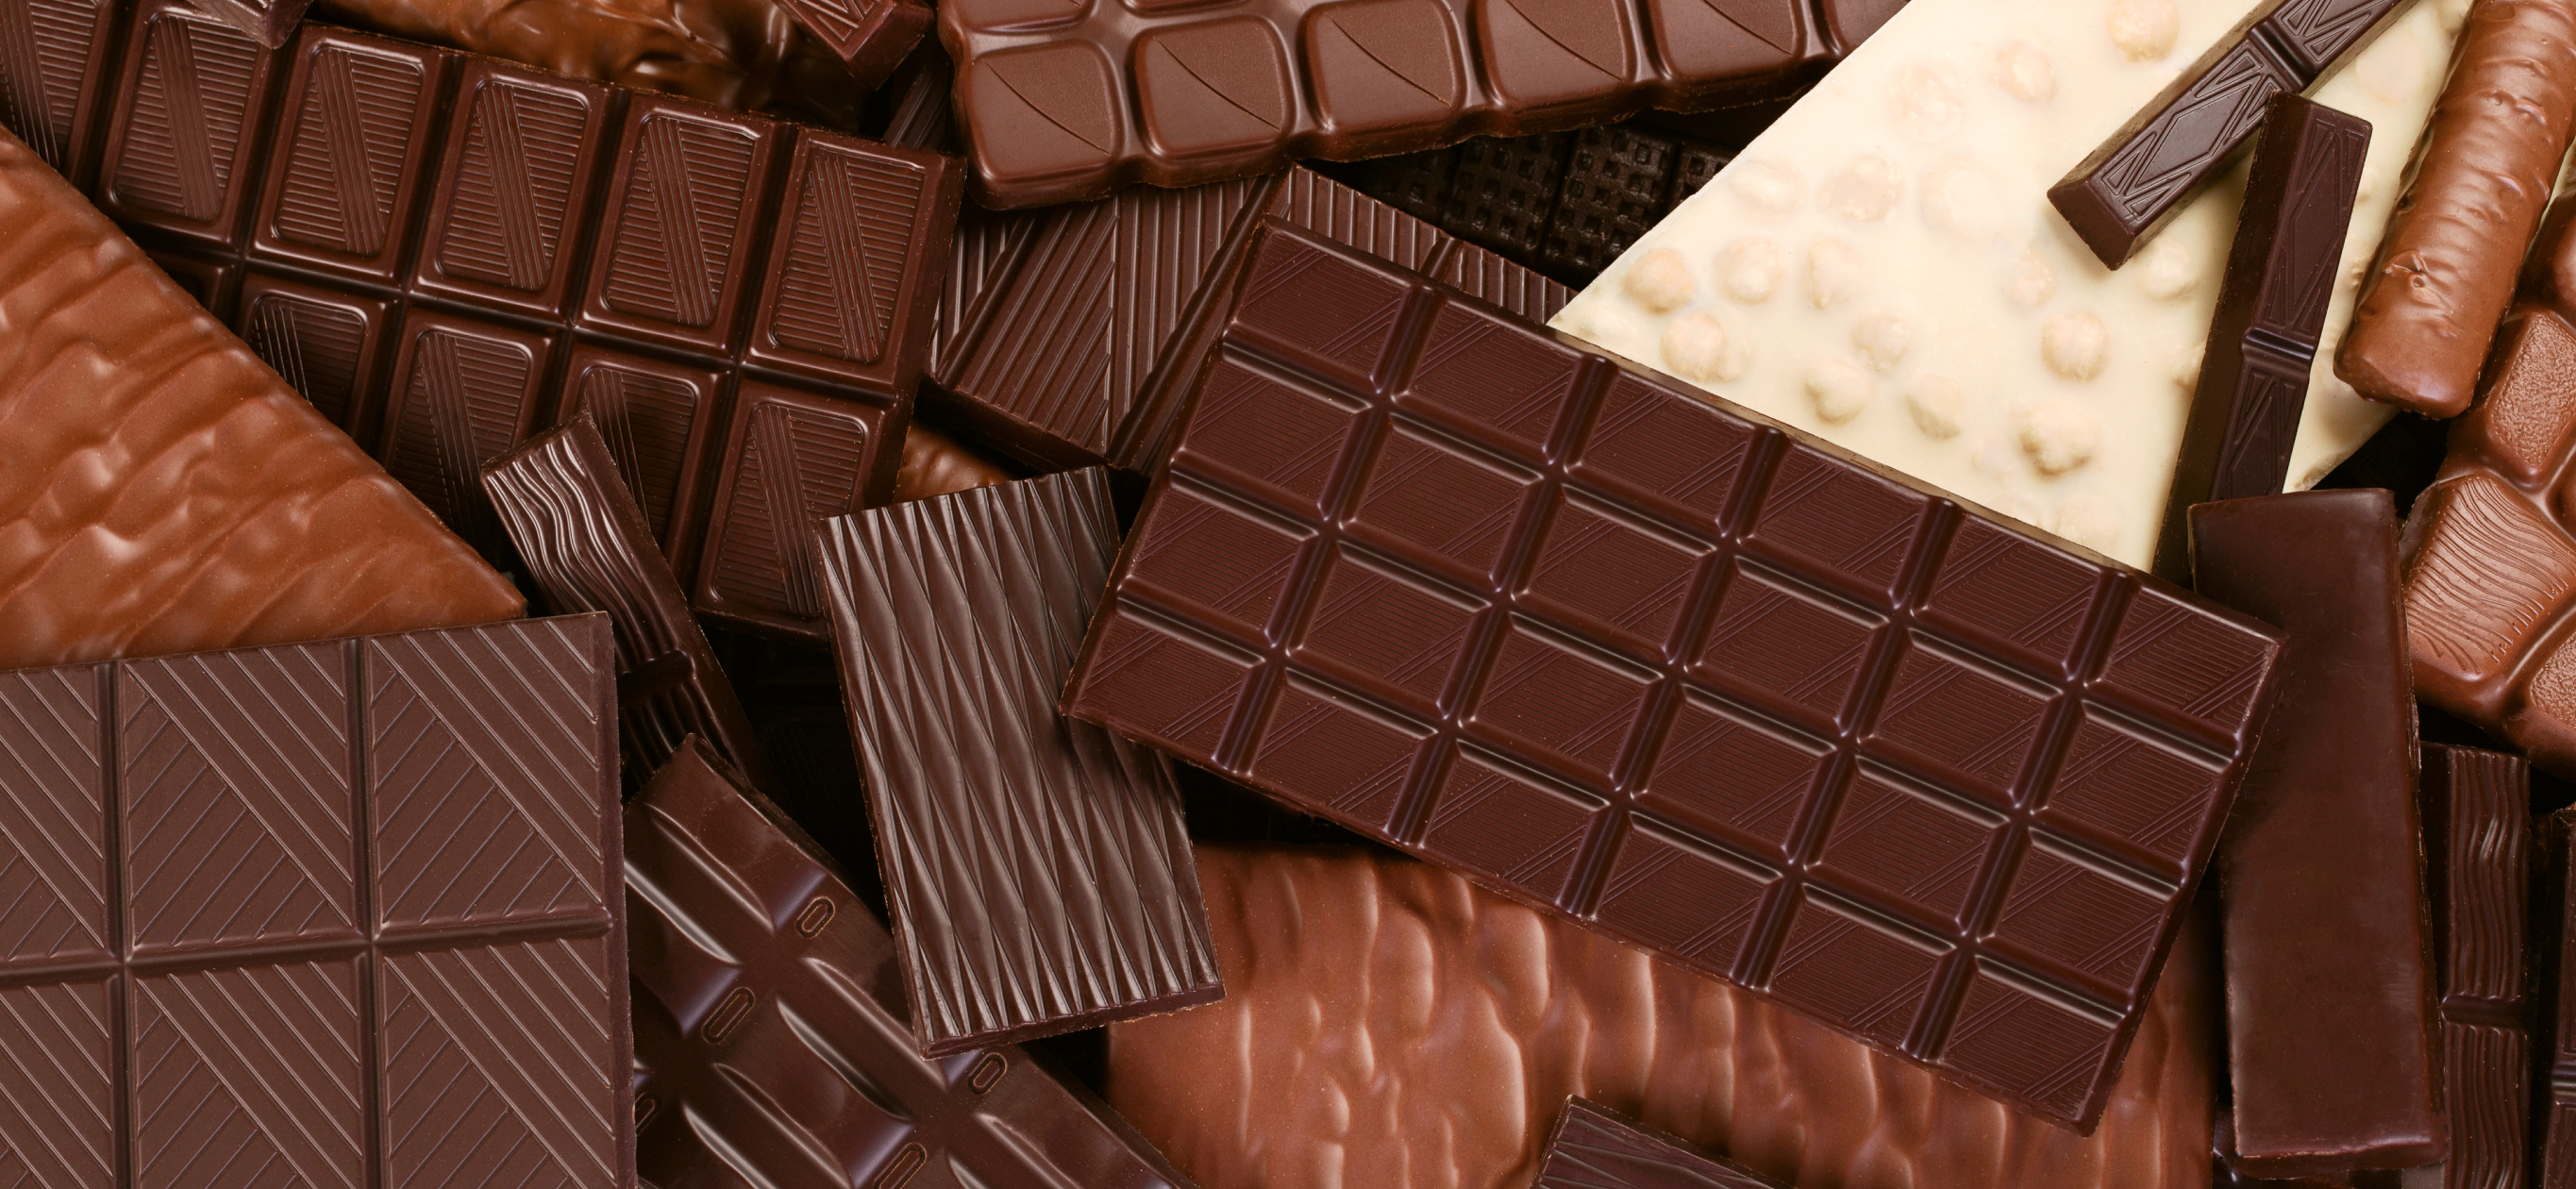 16 видов шоколада: чем различаются и какой покупать